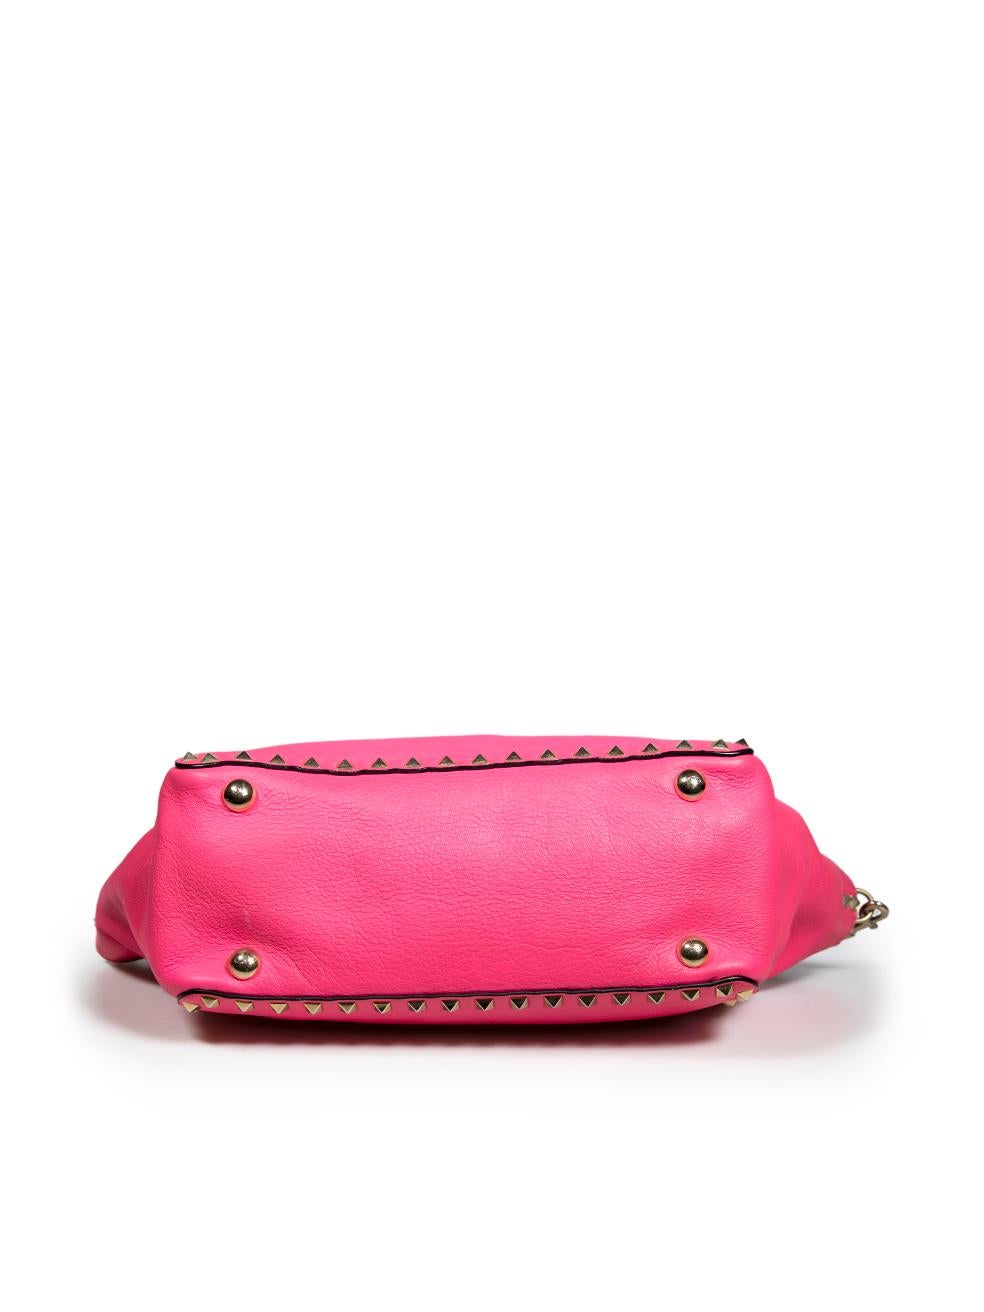 Women's Valentino Garavani Pink Leather Small Rockstud Trapeze Tote For Sale